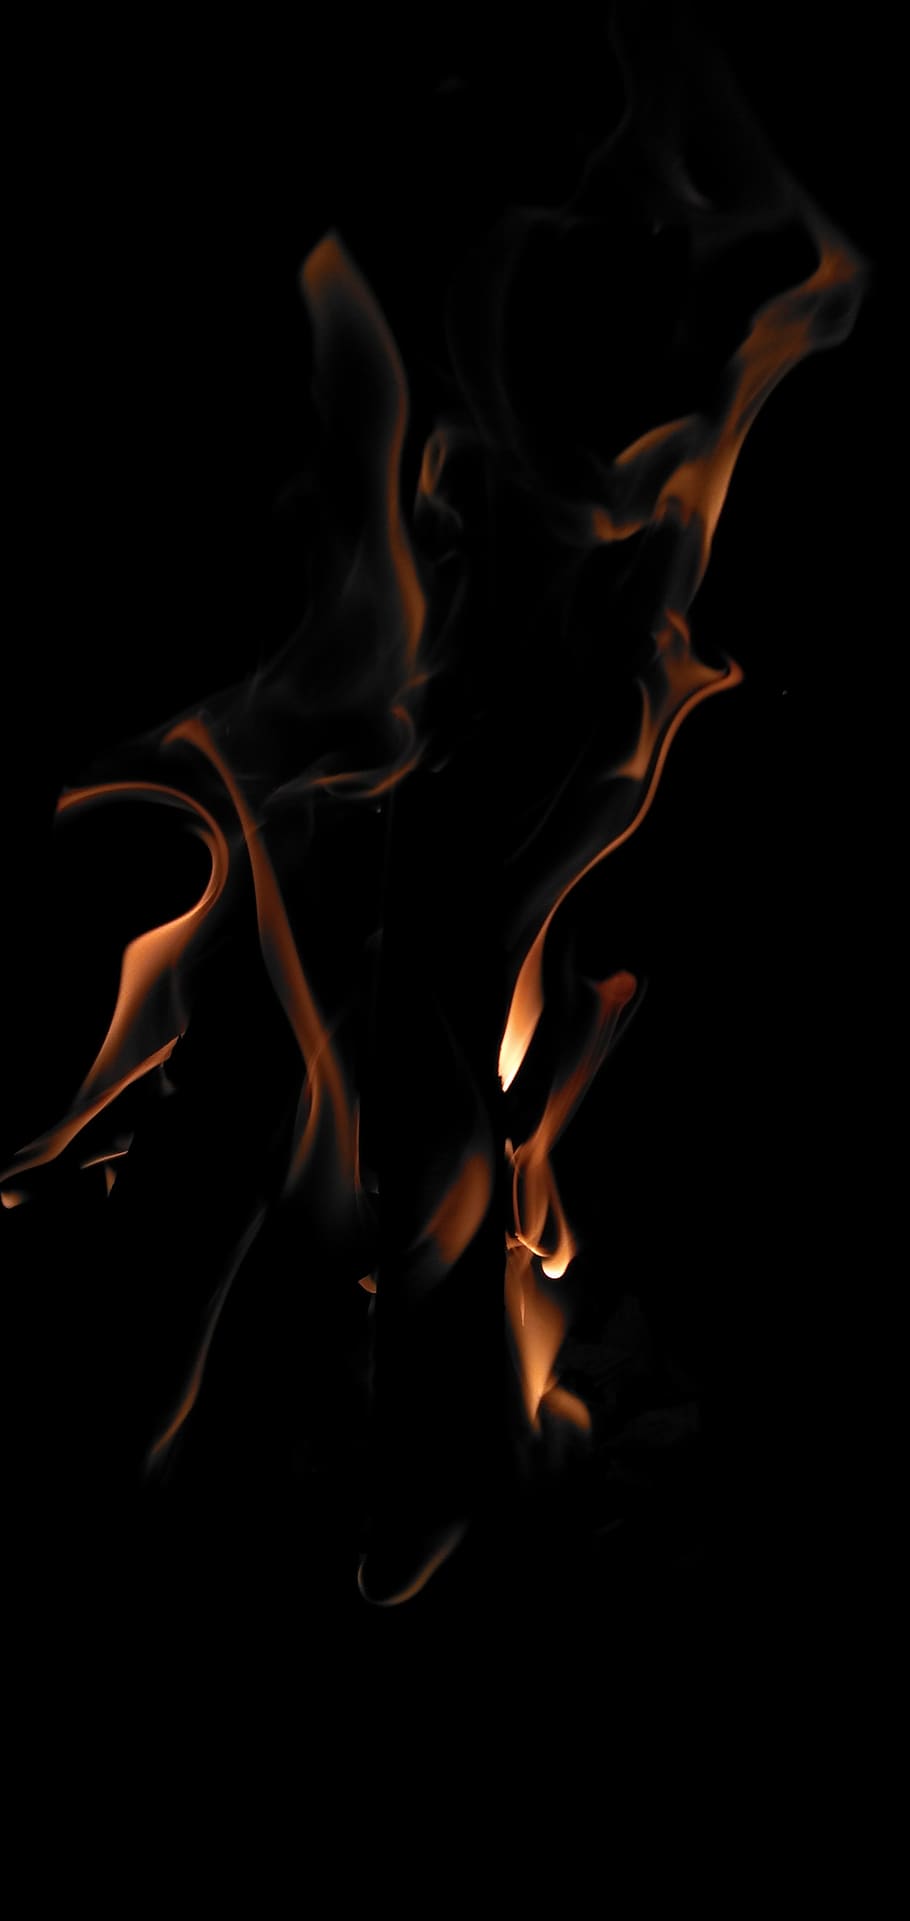 fuego, llama, calor, tibio, caliente, chimenea, quemar, ardiente, fondo negro, fuego - fenómeno natural